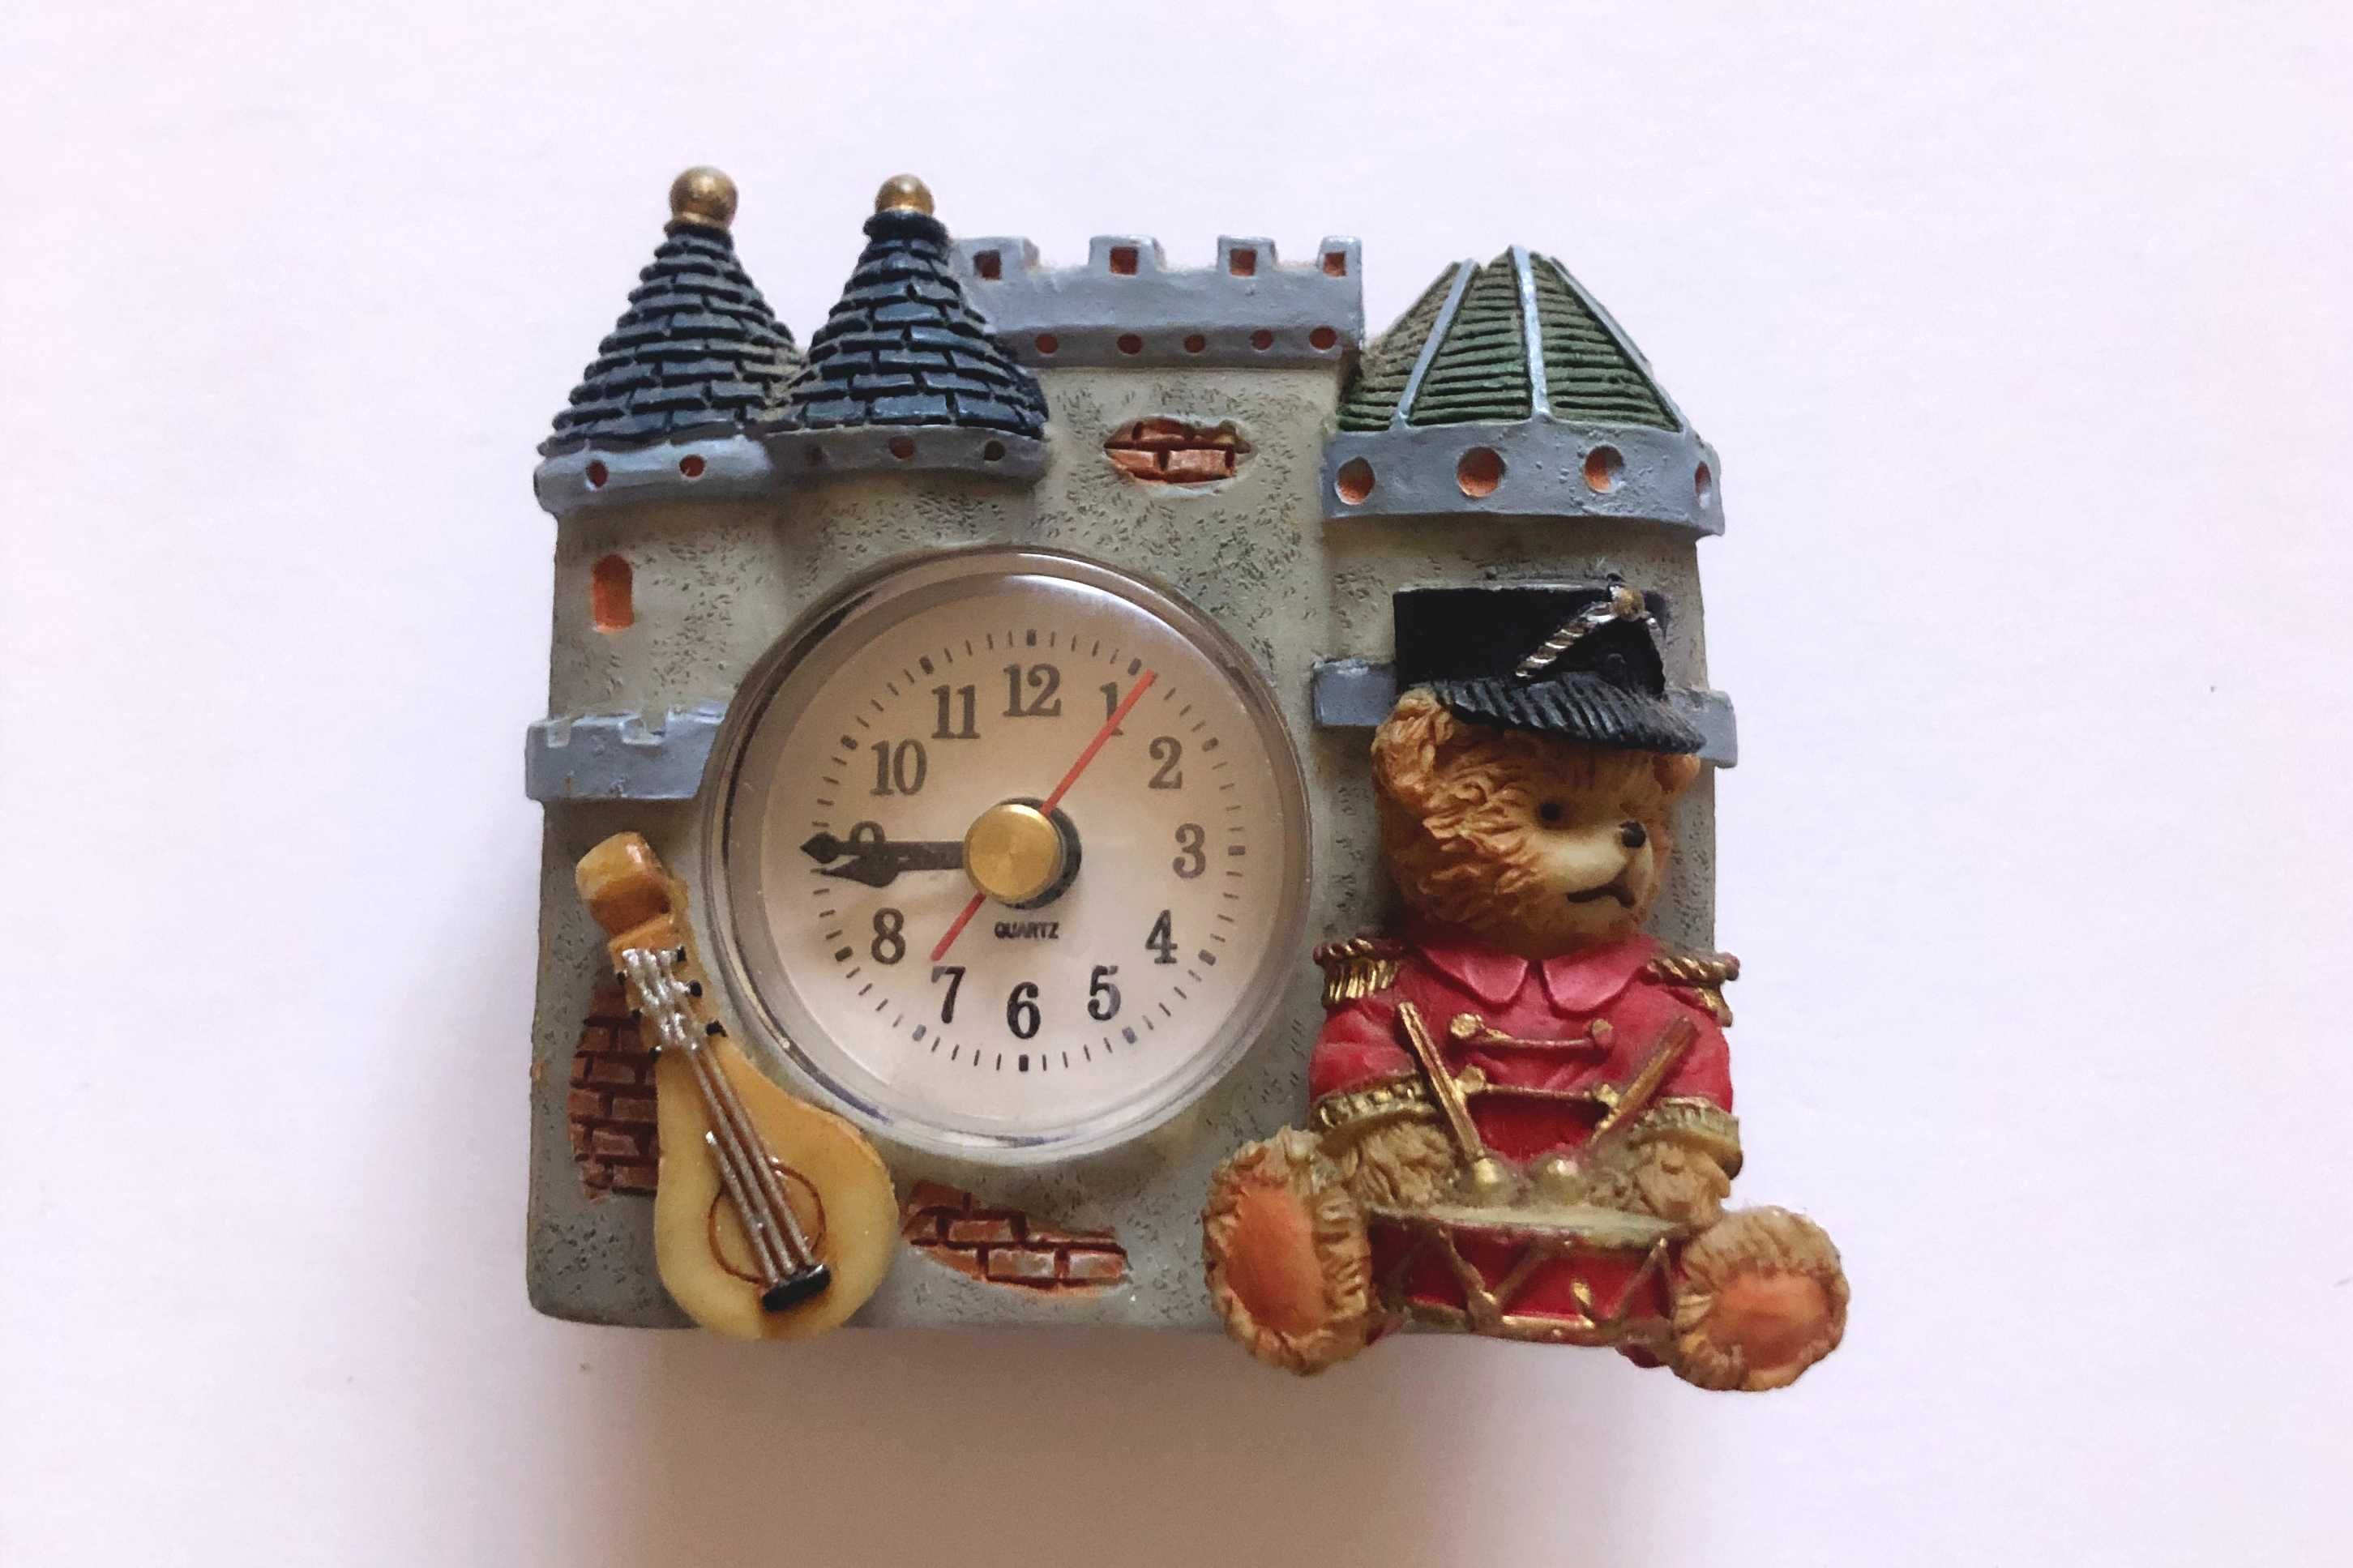 Relógio de porcelana em forma de castelo com urso tambor